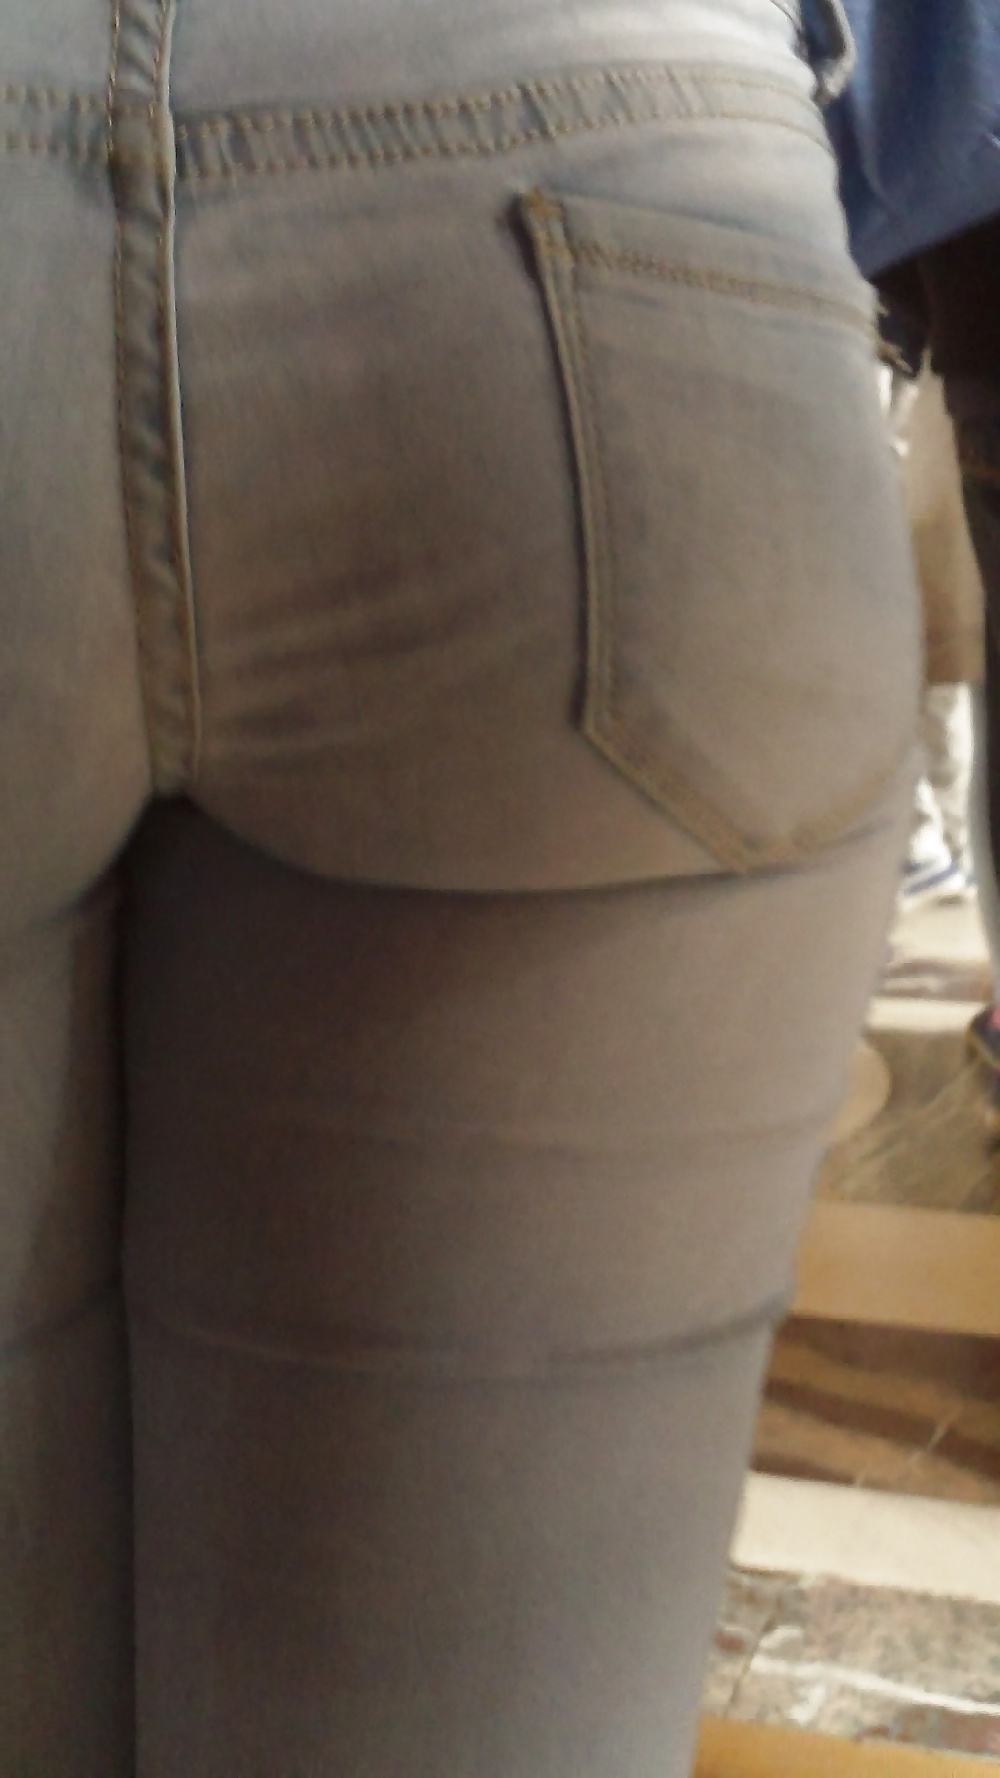 Popular teen girls ass & butt in jeans Part 6 #32010231